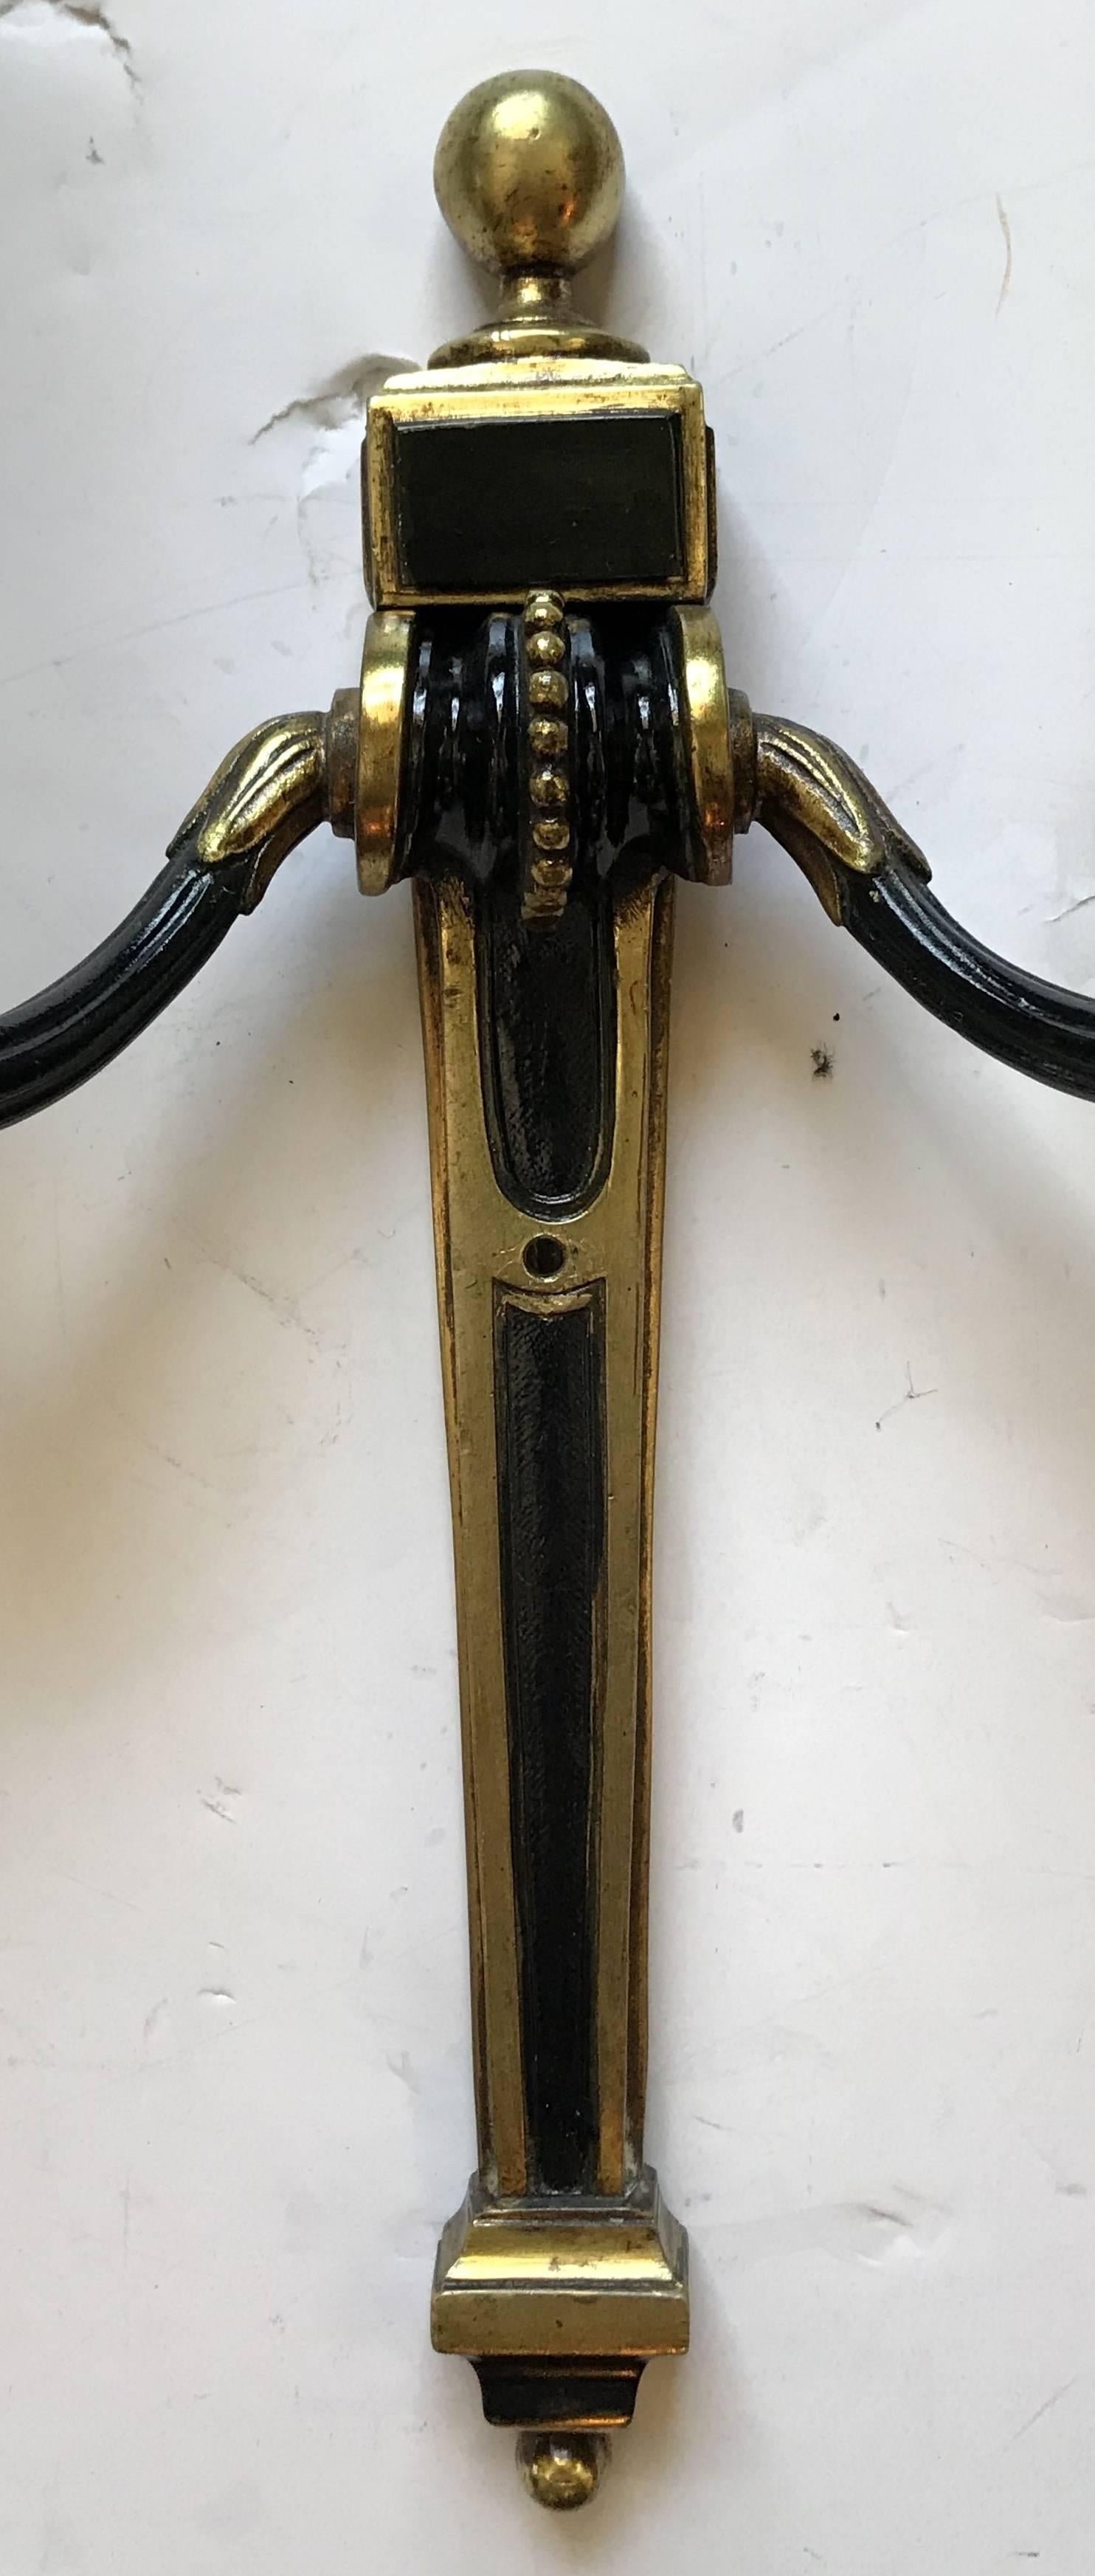 Wunderschönes Paar zweifarbig patinierter Caldwell-Bronze im klassischen französischen Regency-, neoklassizistischen und Empire-Stil, komplett neu verkabelt mit neuen Kandelaberfassungen.
 